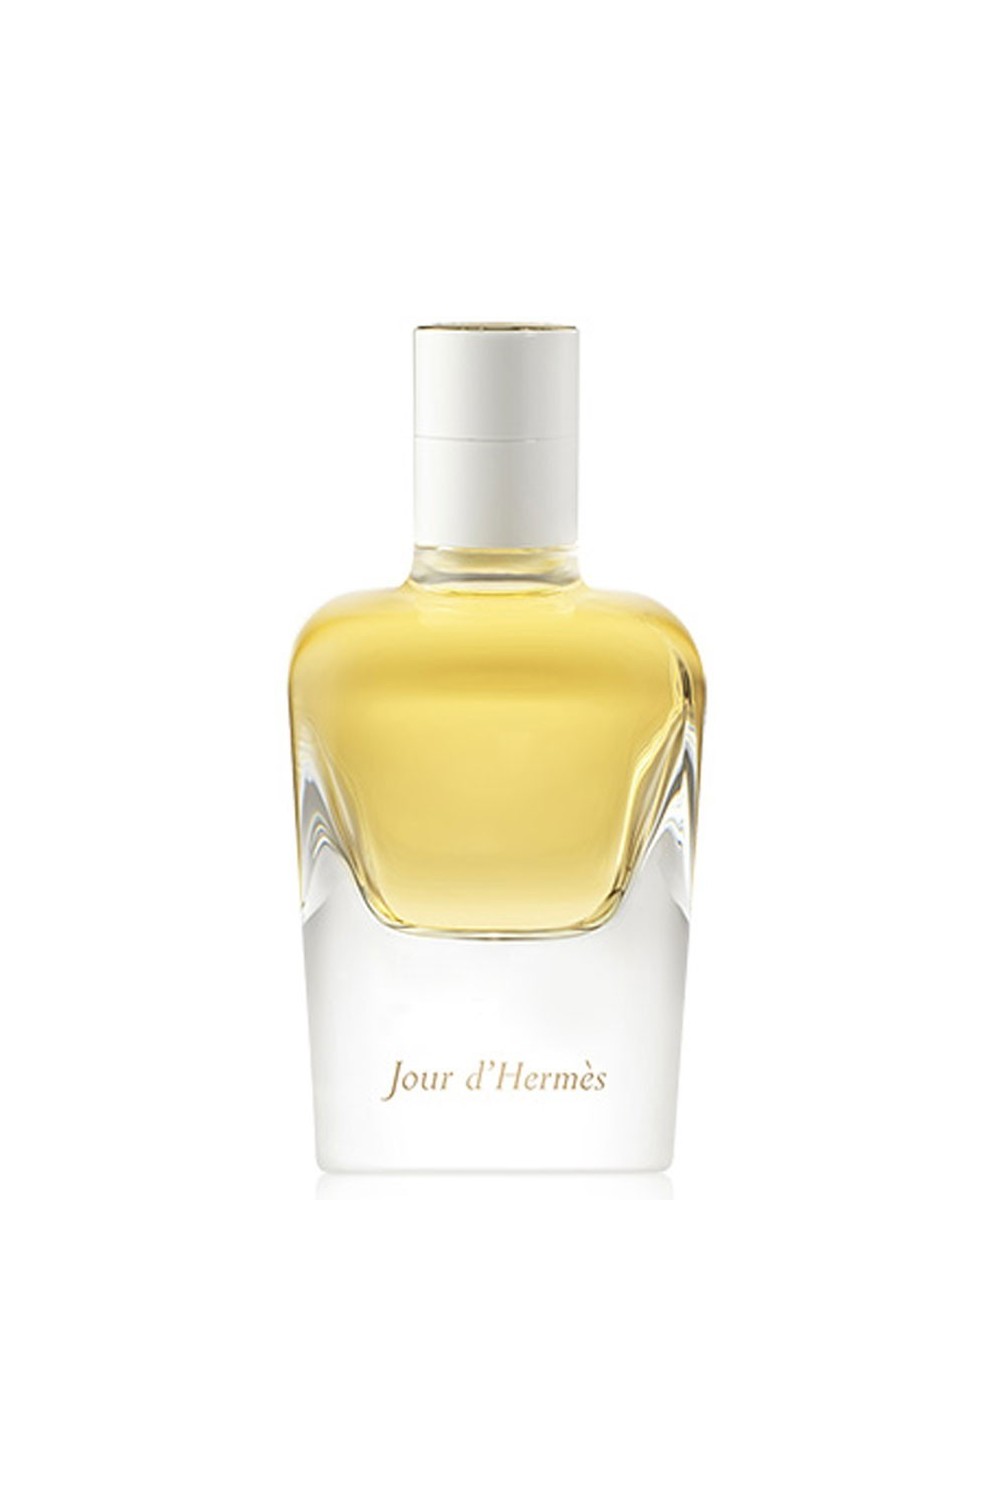 HERMÈS - Hermes Jour D'hermes Eau De Perfume Spray Refillable 85ml